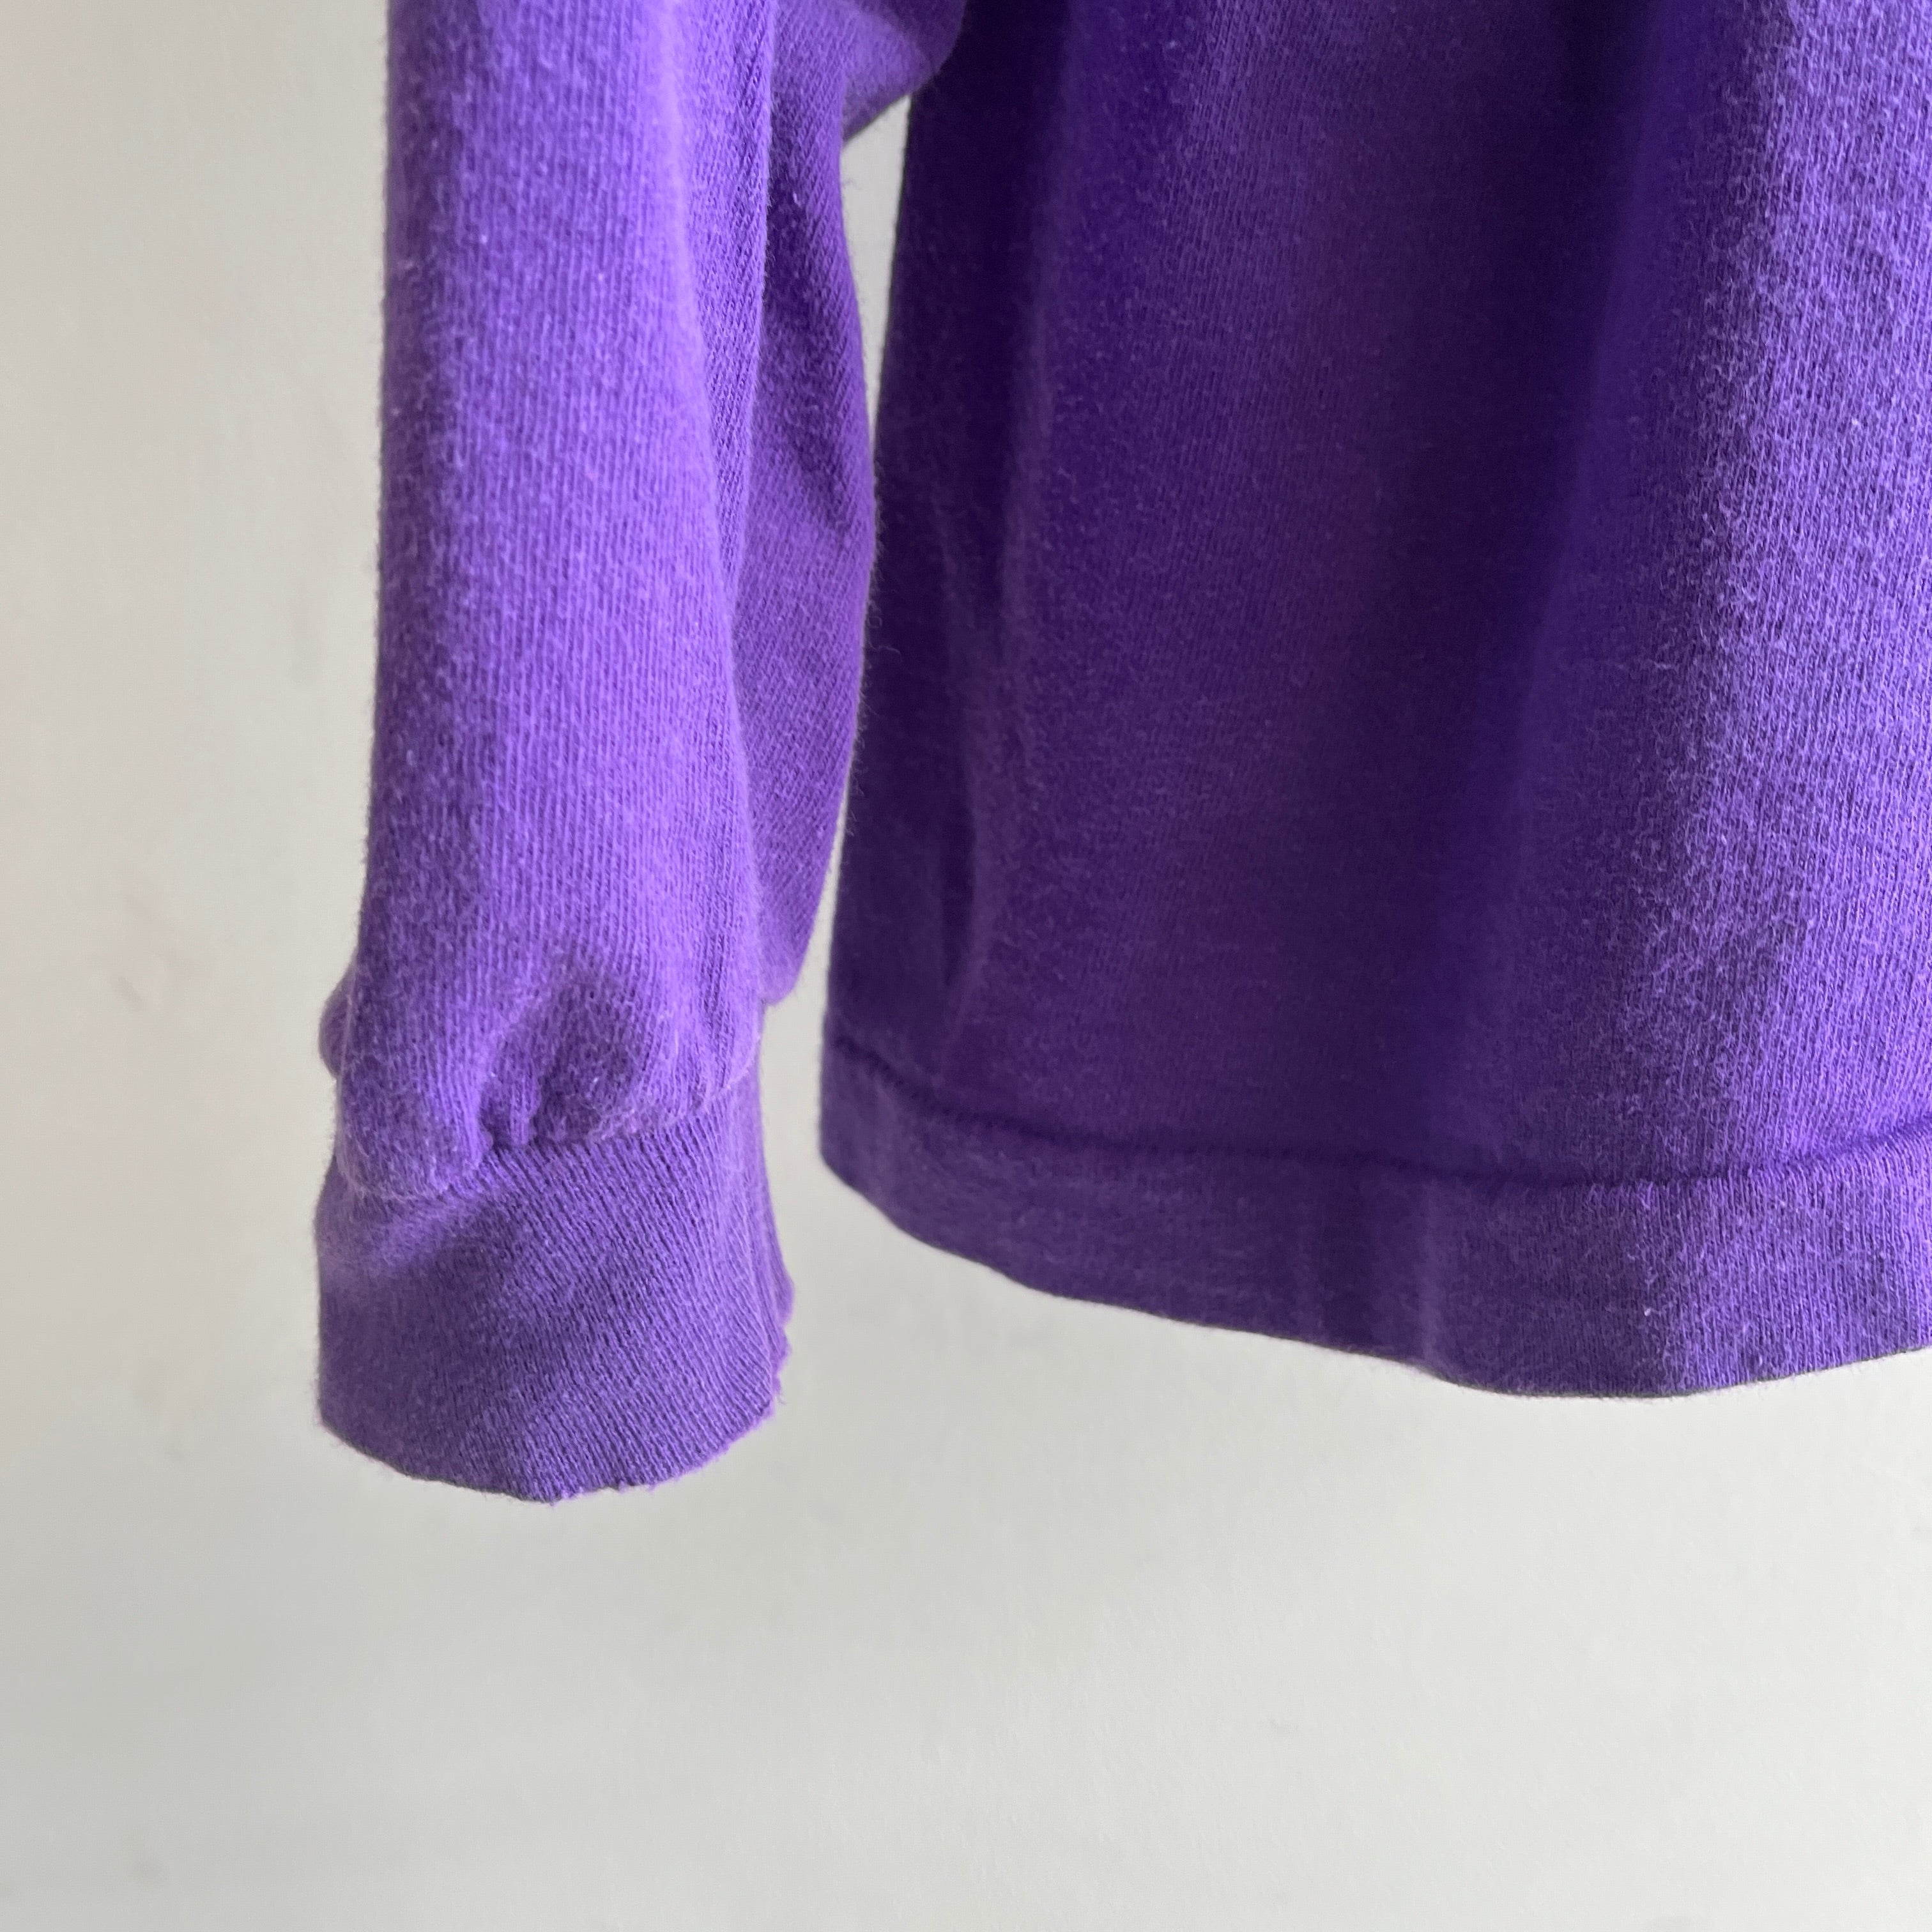 T-shirt violet à manches longues vierge des années 1980 - coton peigné